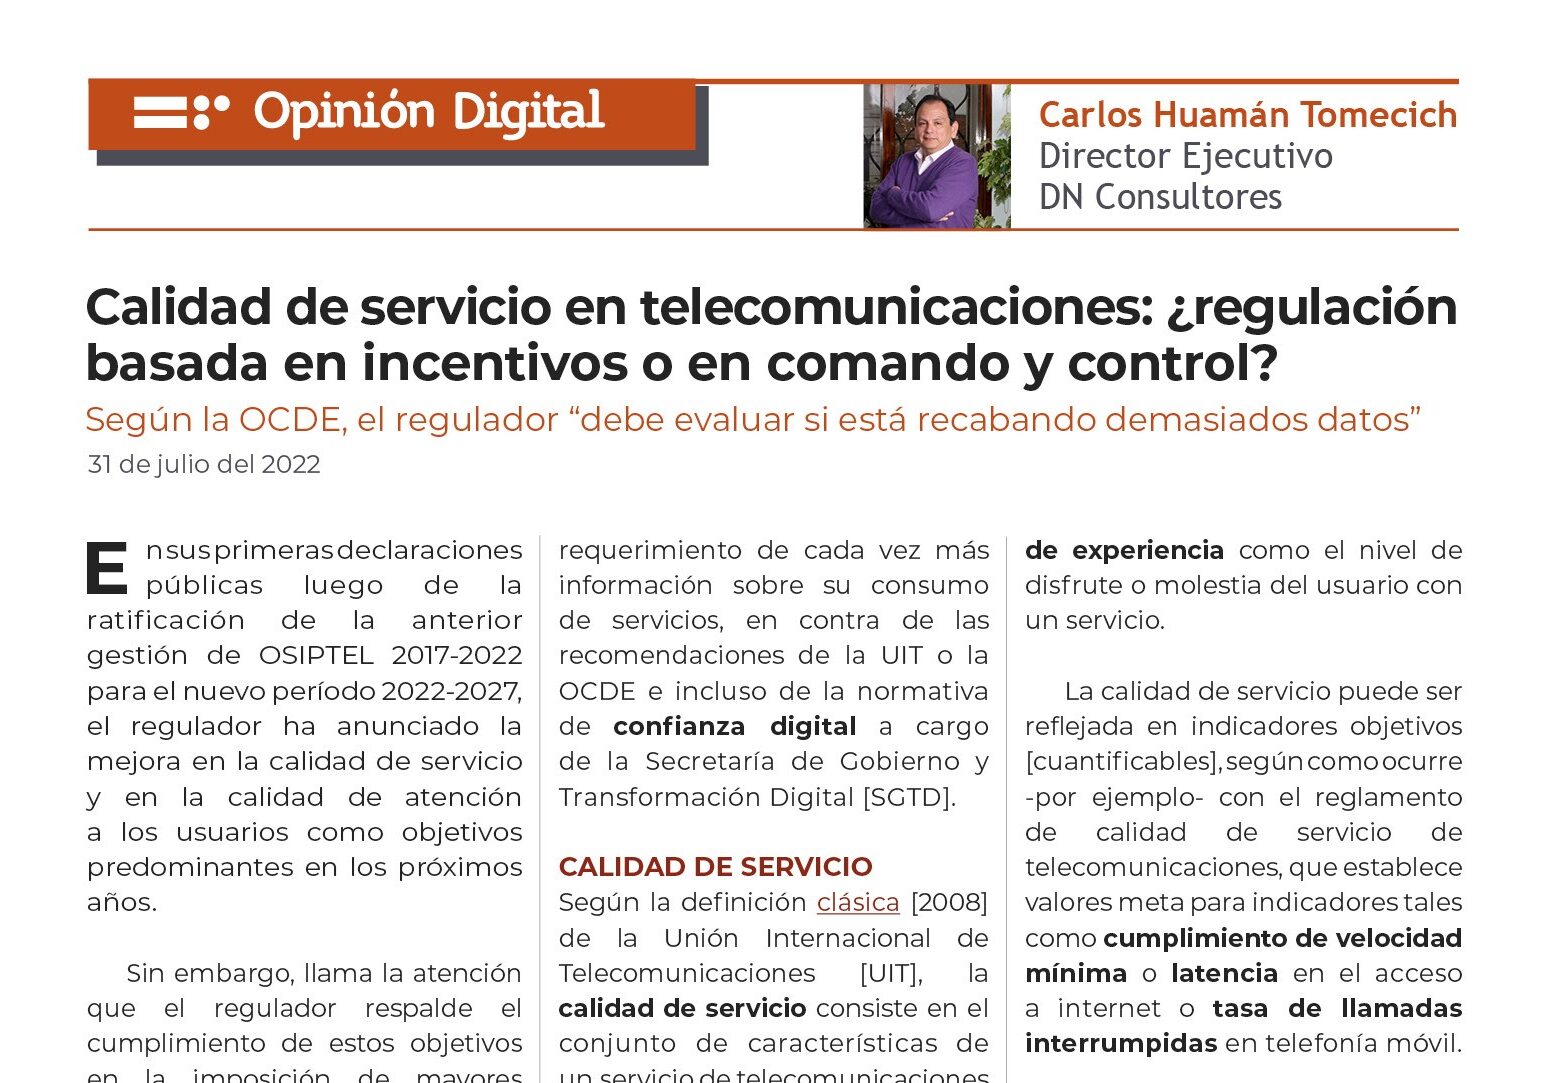  Calidad de servicio en telecomunicaciones Según la OCDE, el regulador “debe evaluar si está recabando demasiados datos” 